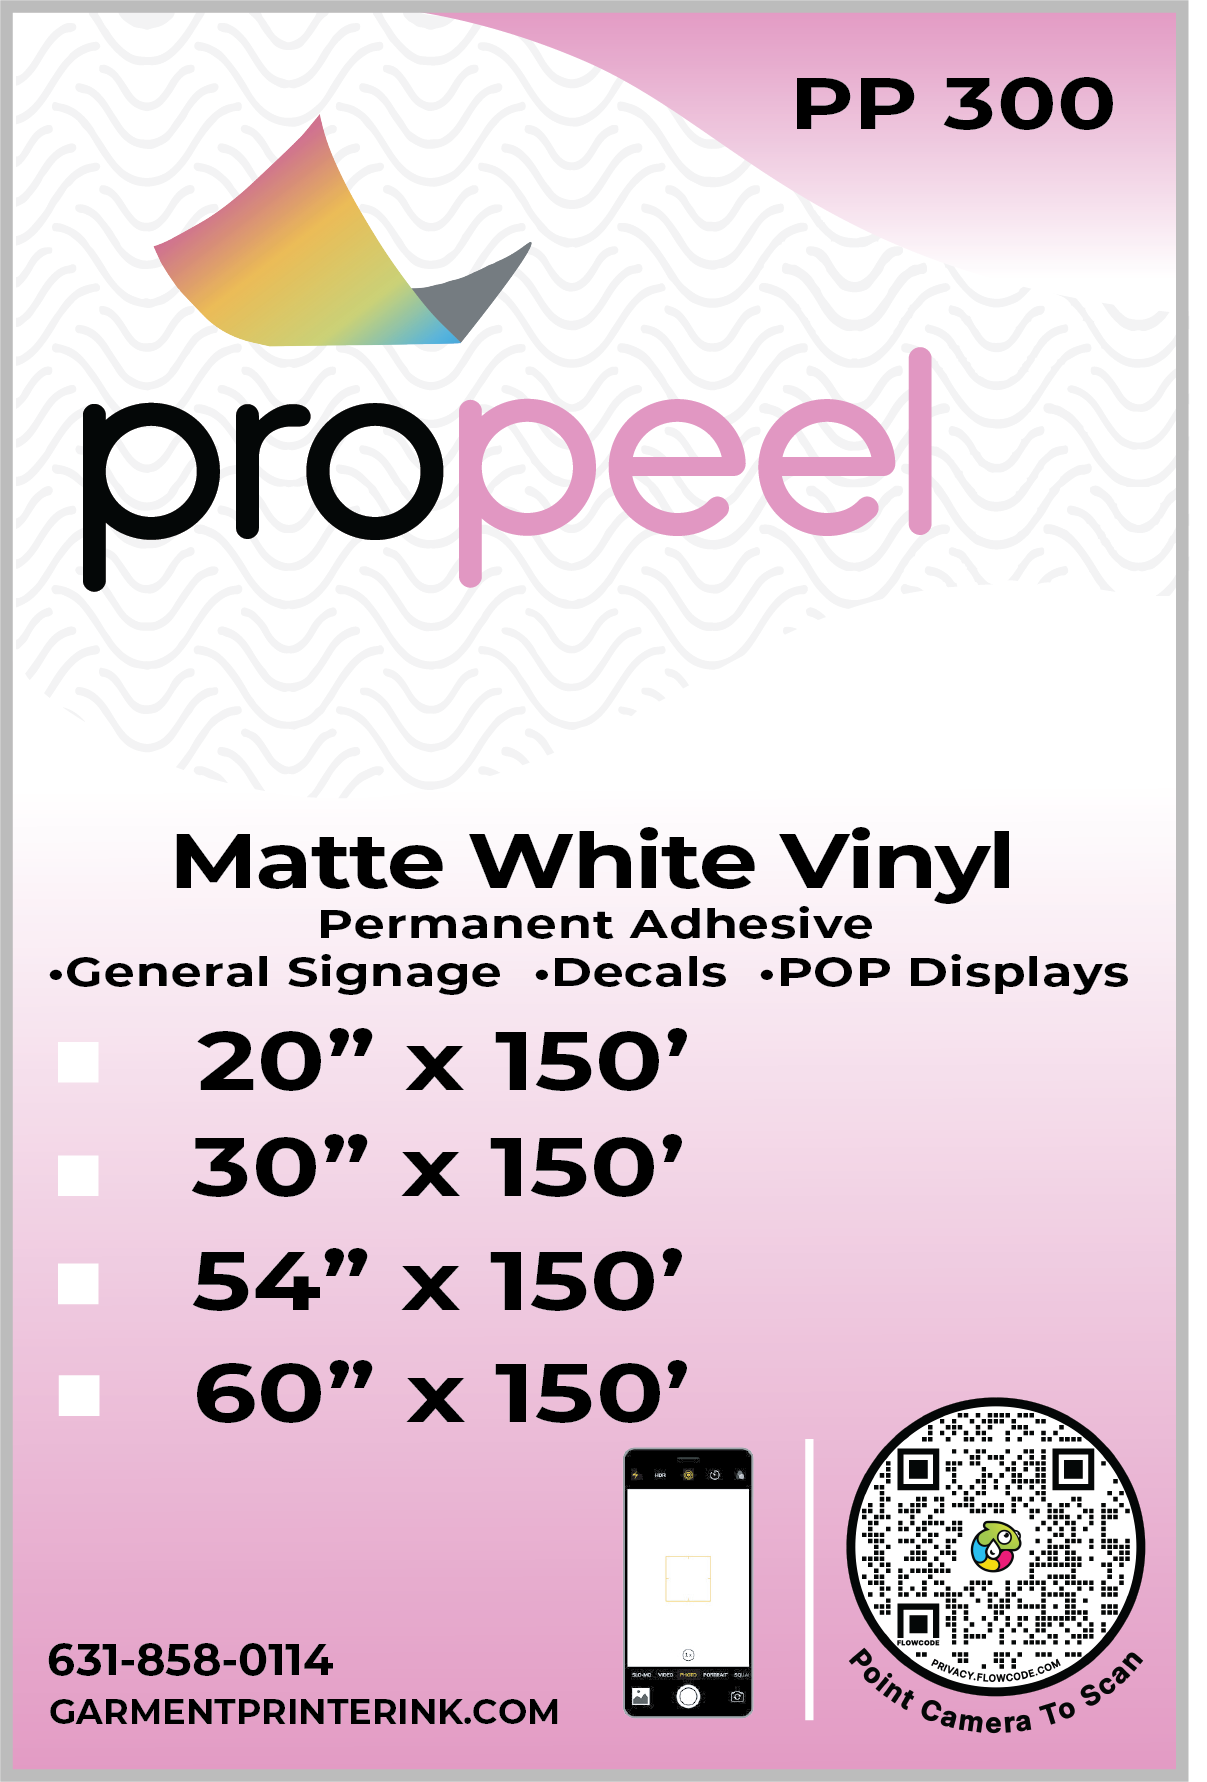 matte white vinyl from propeel